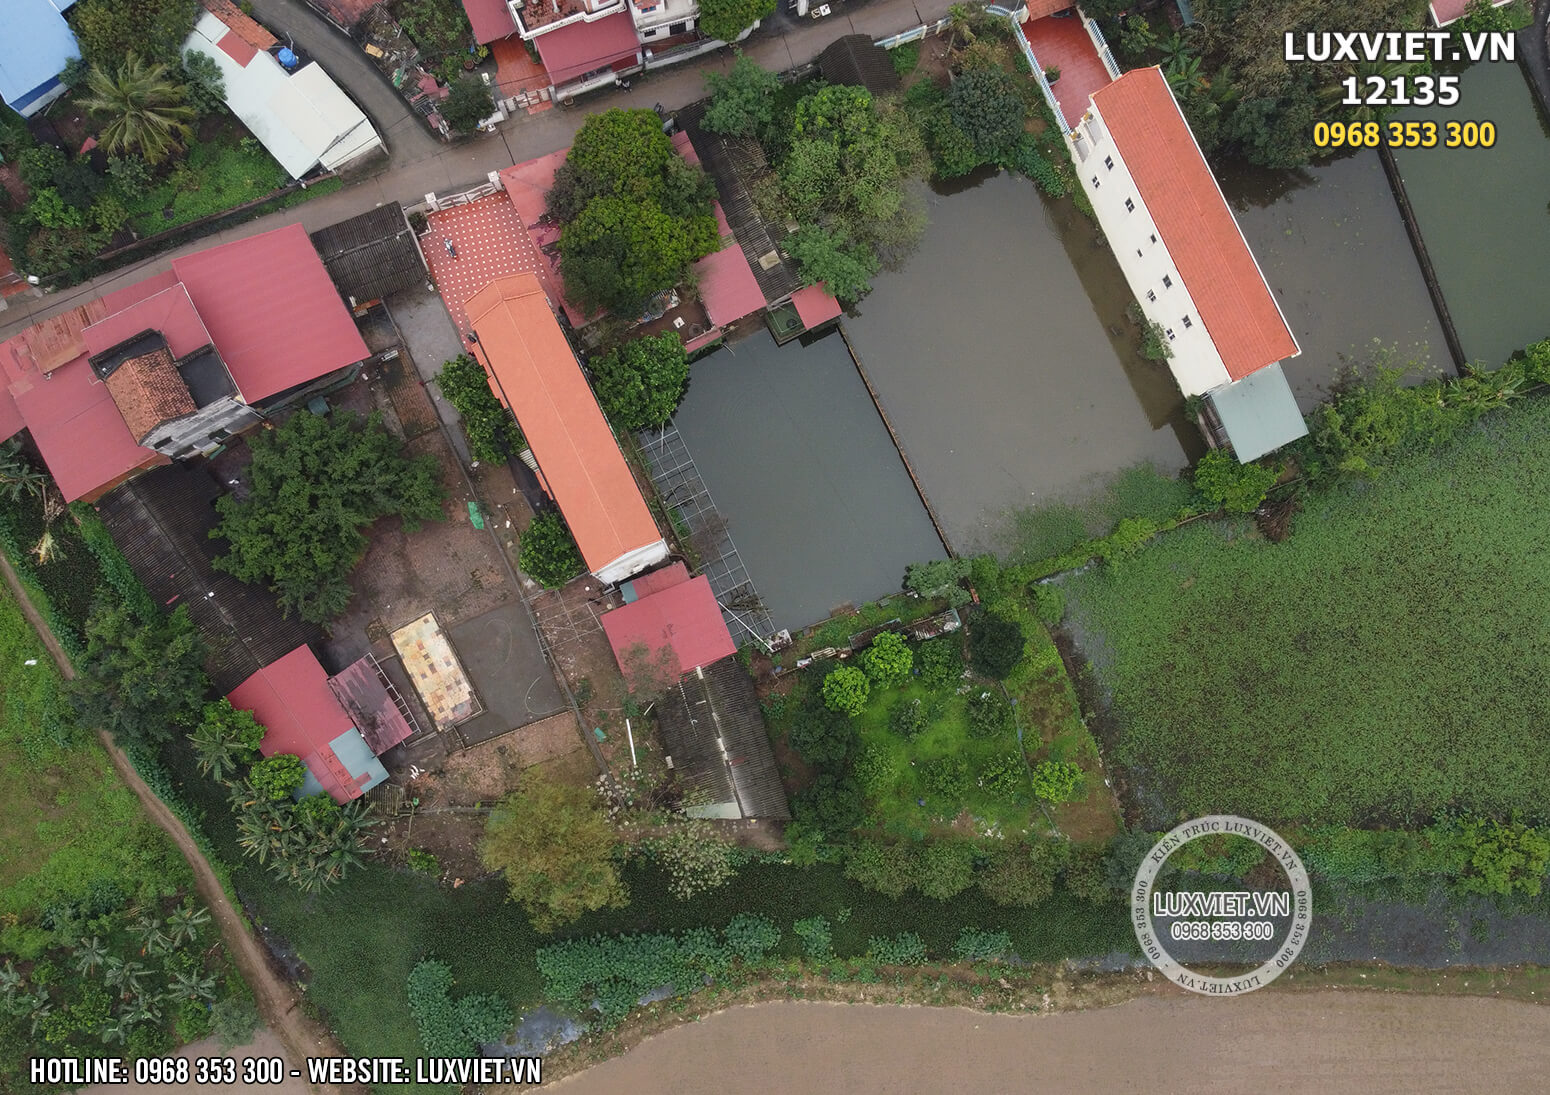 Hình ảnh khuôn đất thực tế từ trên cao qua flycam mà kiến trúc sư Luxviet về khảo sát